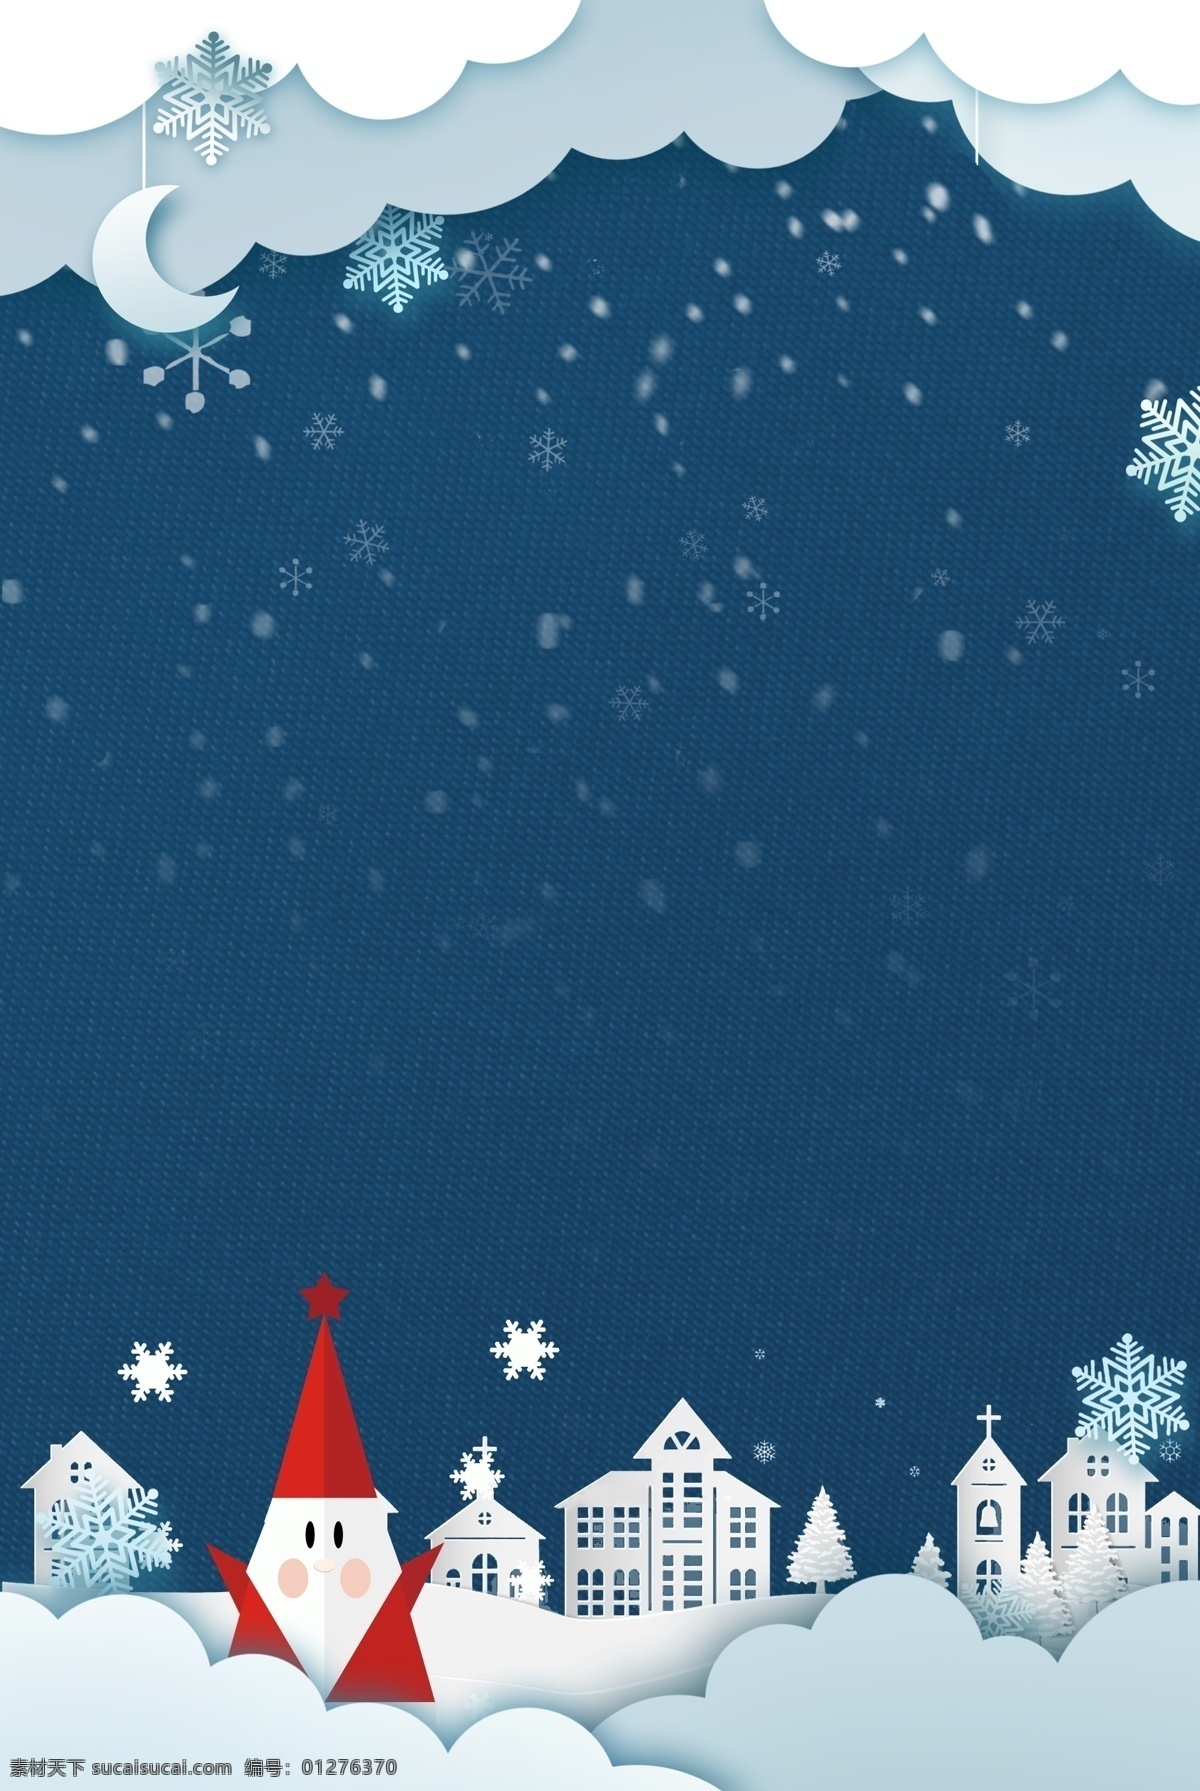 圣诞 折纸 风 创意 海报 合成 圣诞节 圣诞老人 折纸风 房屋 雪景 雪花 卡通 简约